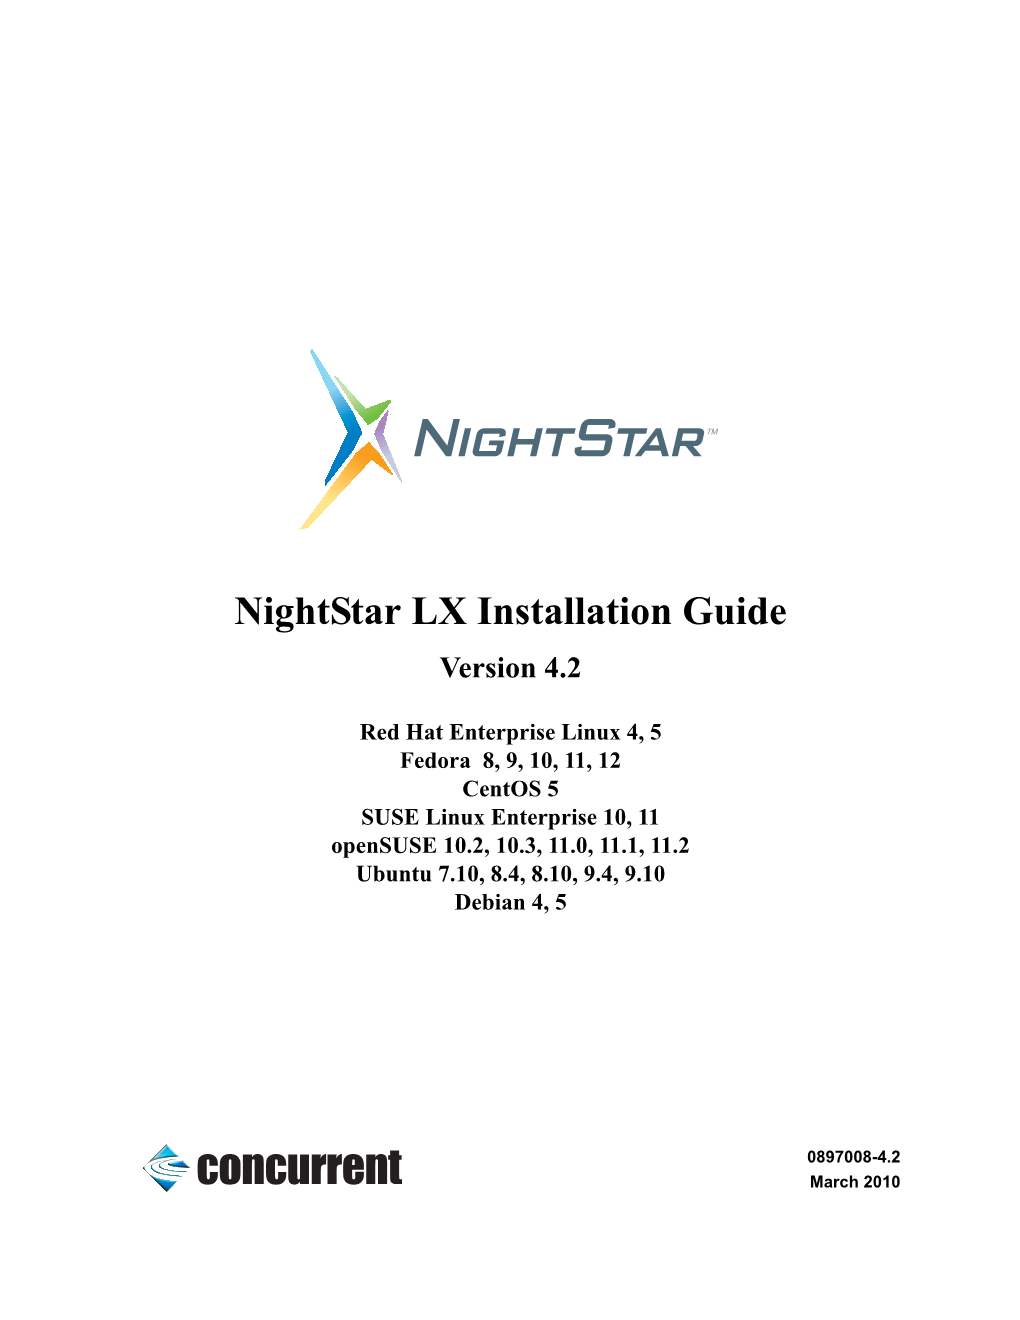 Nightstar LX Installation Guide Version 4.2